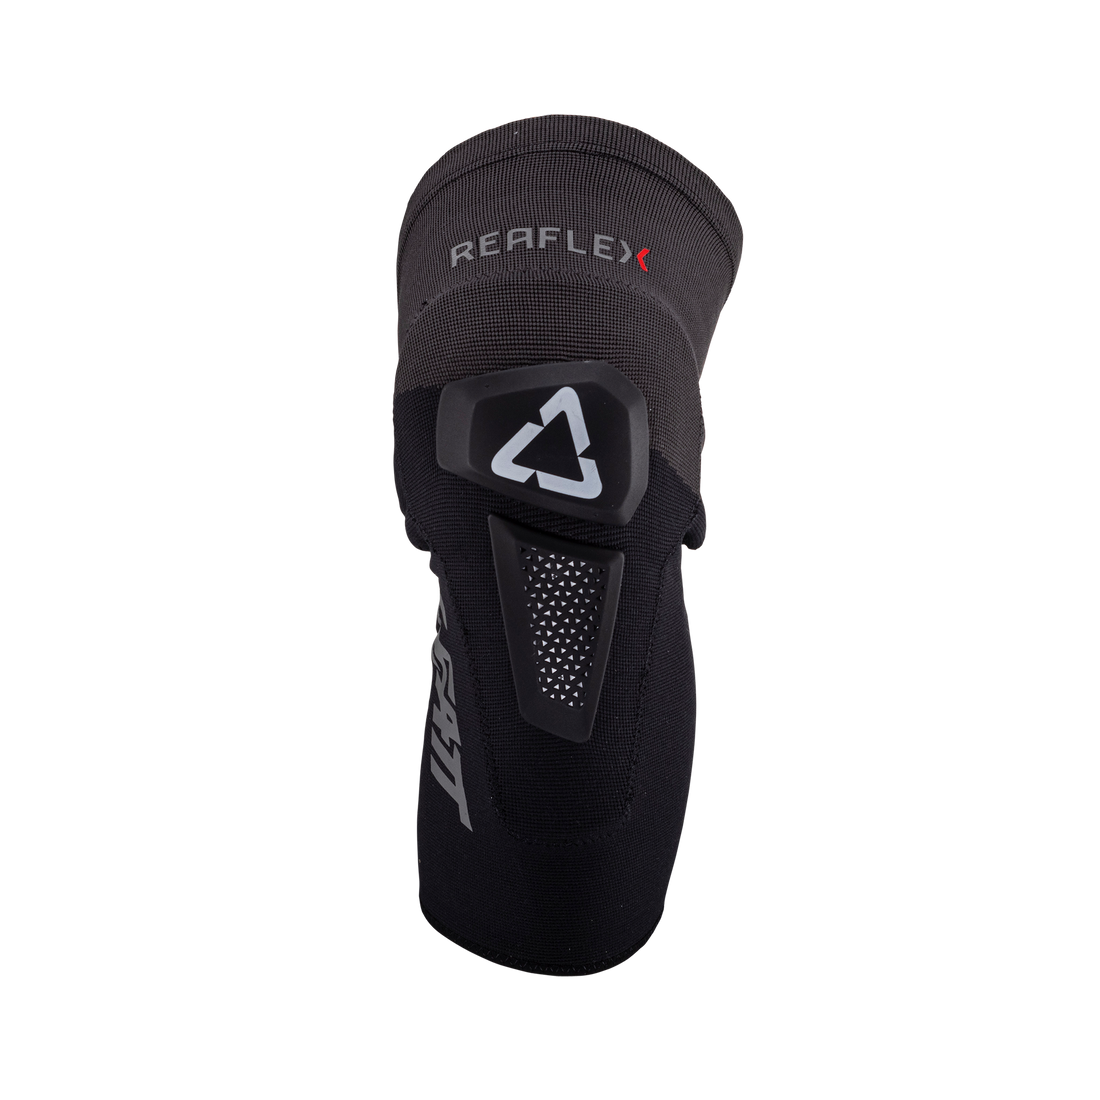 Leatt Reaflex Hybrid Knee Guards V24